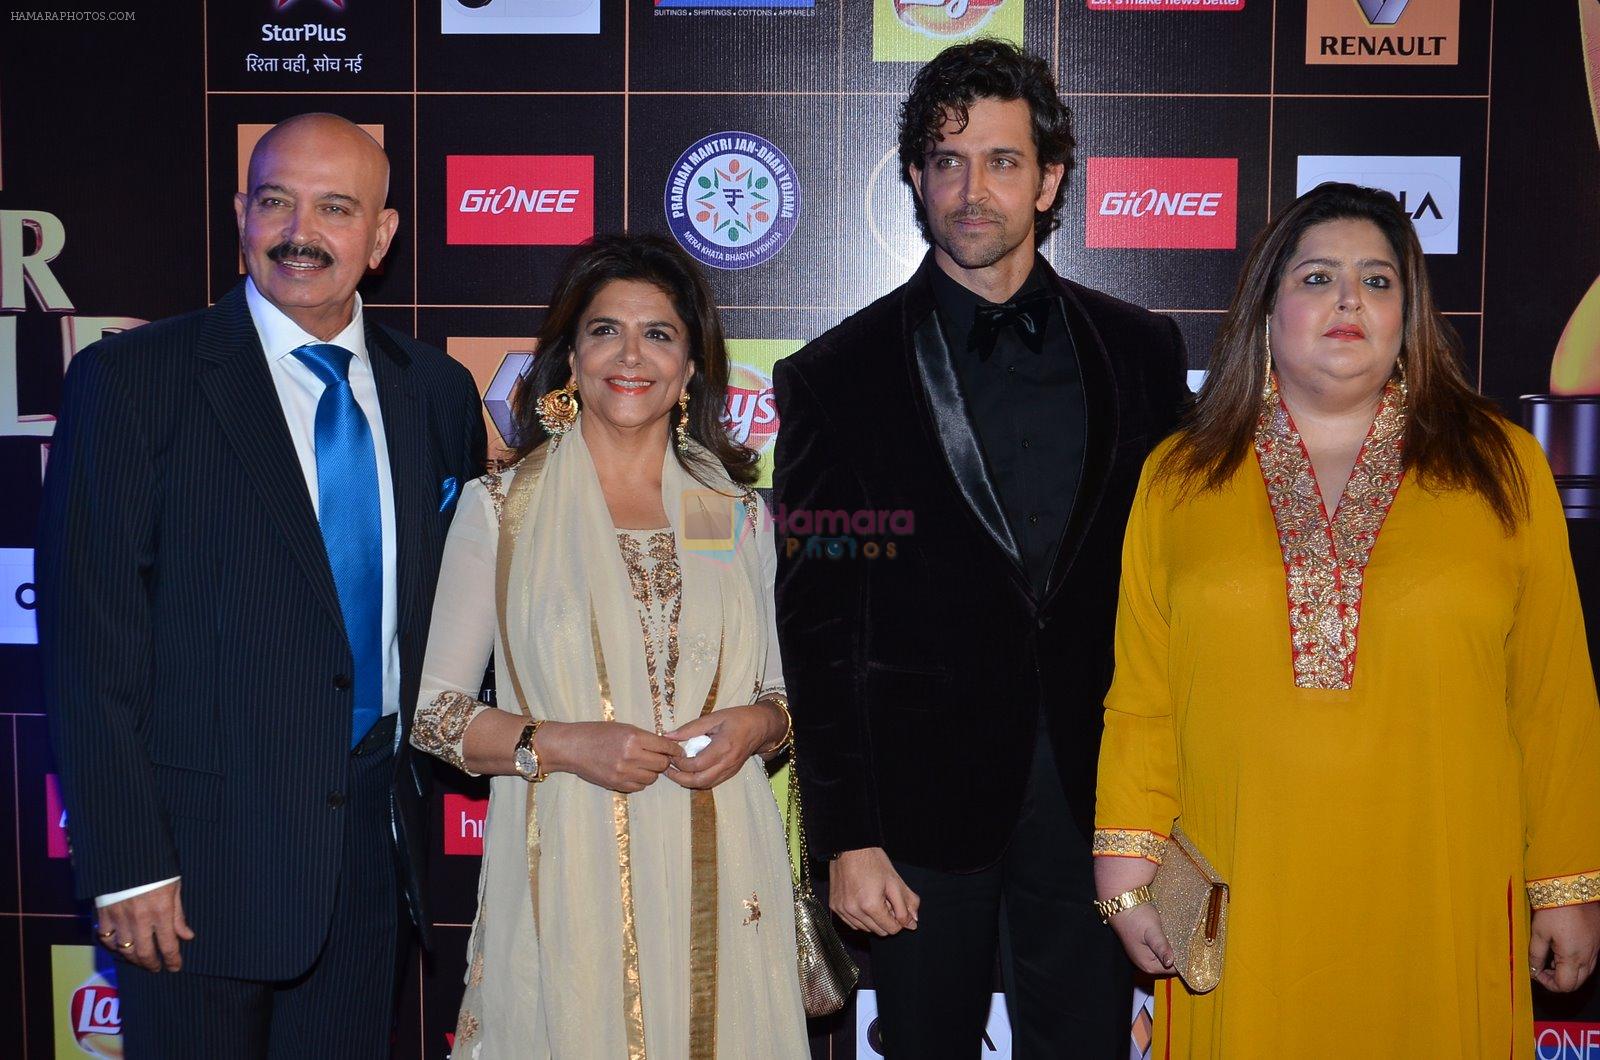 Hrithik Roshan, Sunaina Roshan, Rakesh Roshan, Pinky Roshan at Producers Guild Awards 2015 in Mumbai on 11th Jan 2015